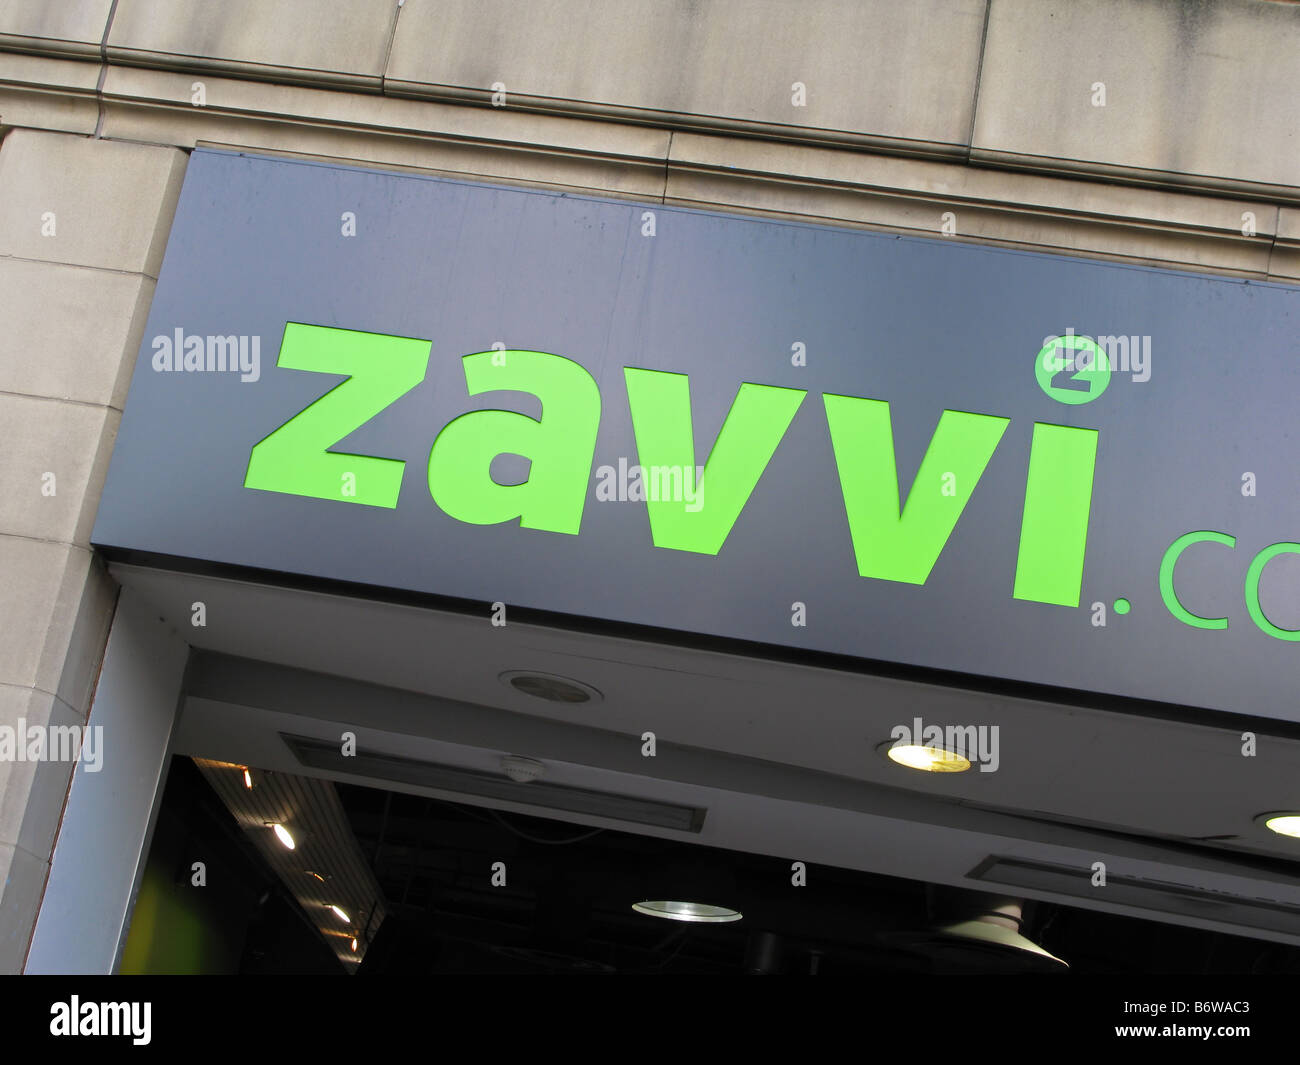 zavvi store sign and logo Stock Photo